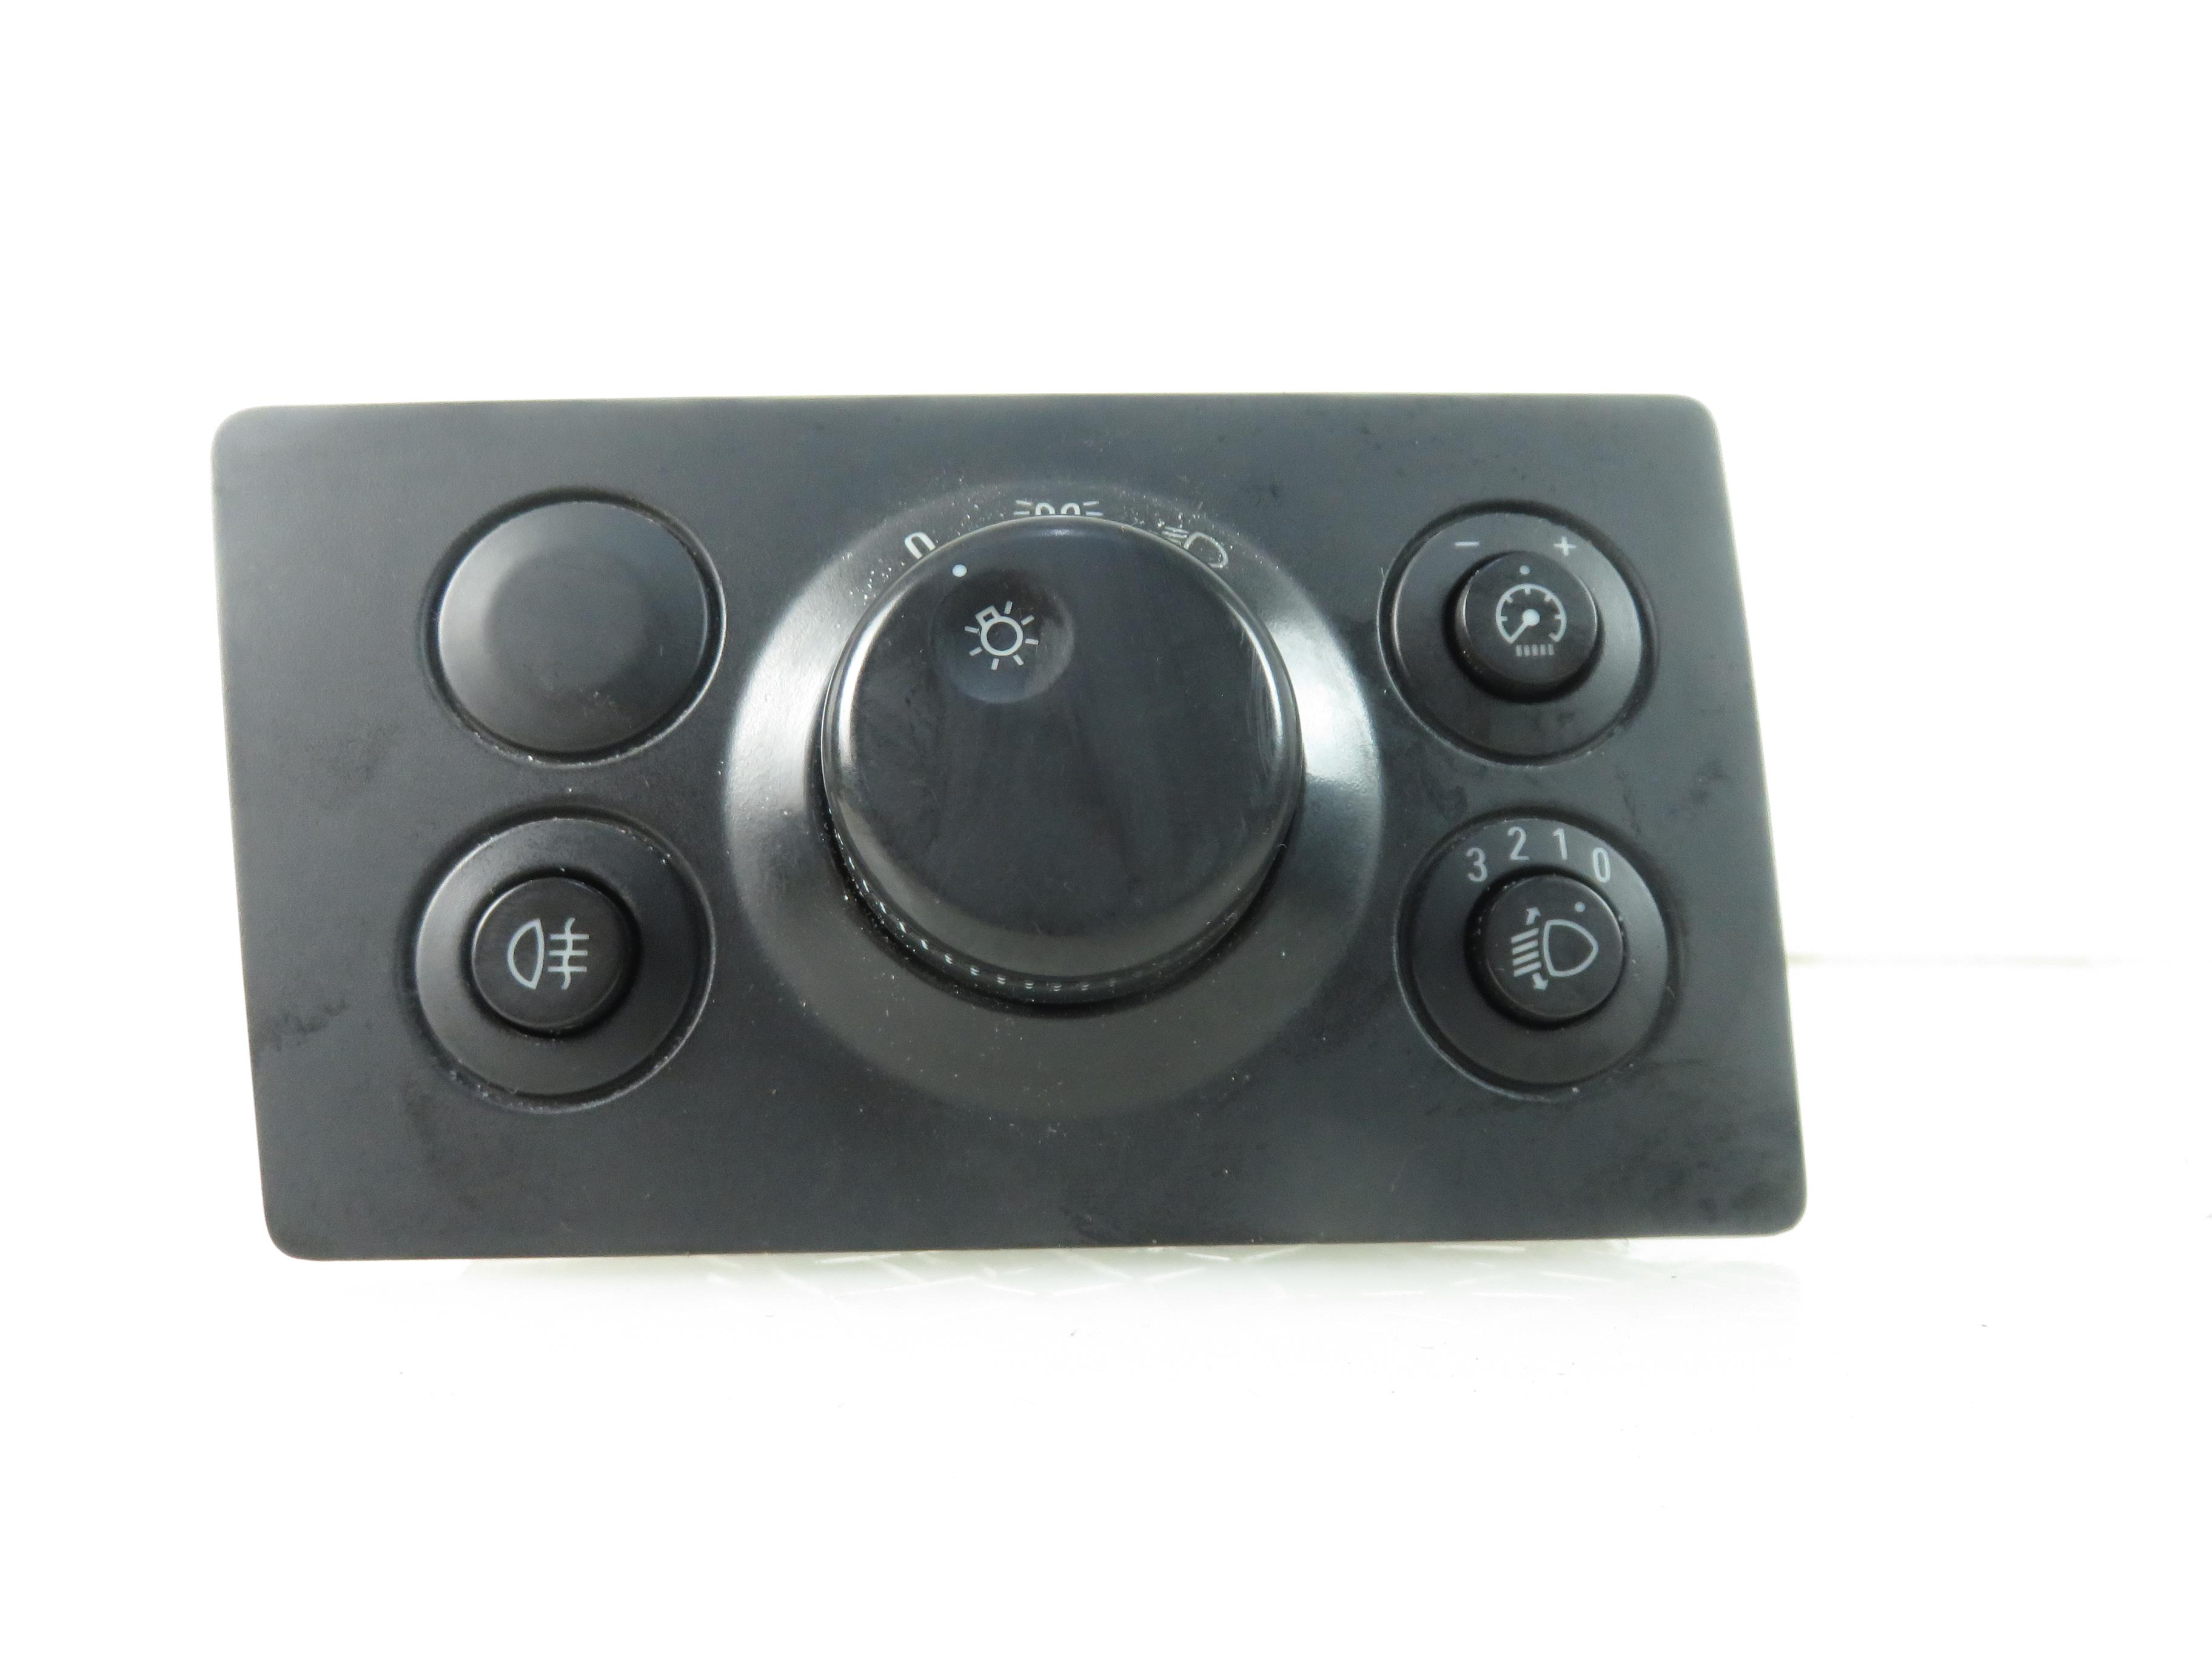 OPEL Zafira B (2005-2010) Headlight Switch Control Unit 13205863 17785587